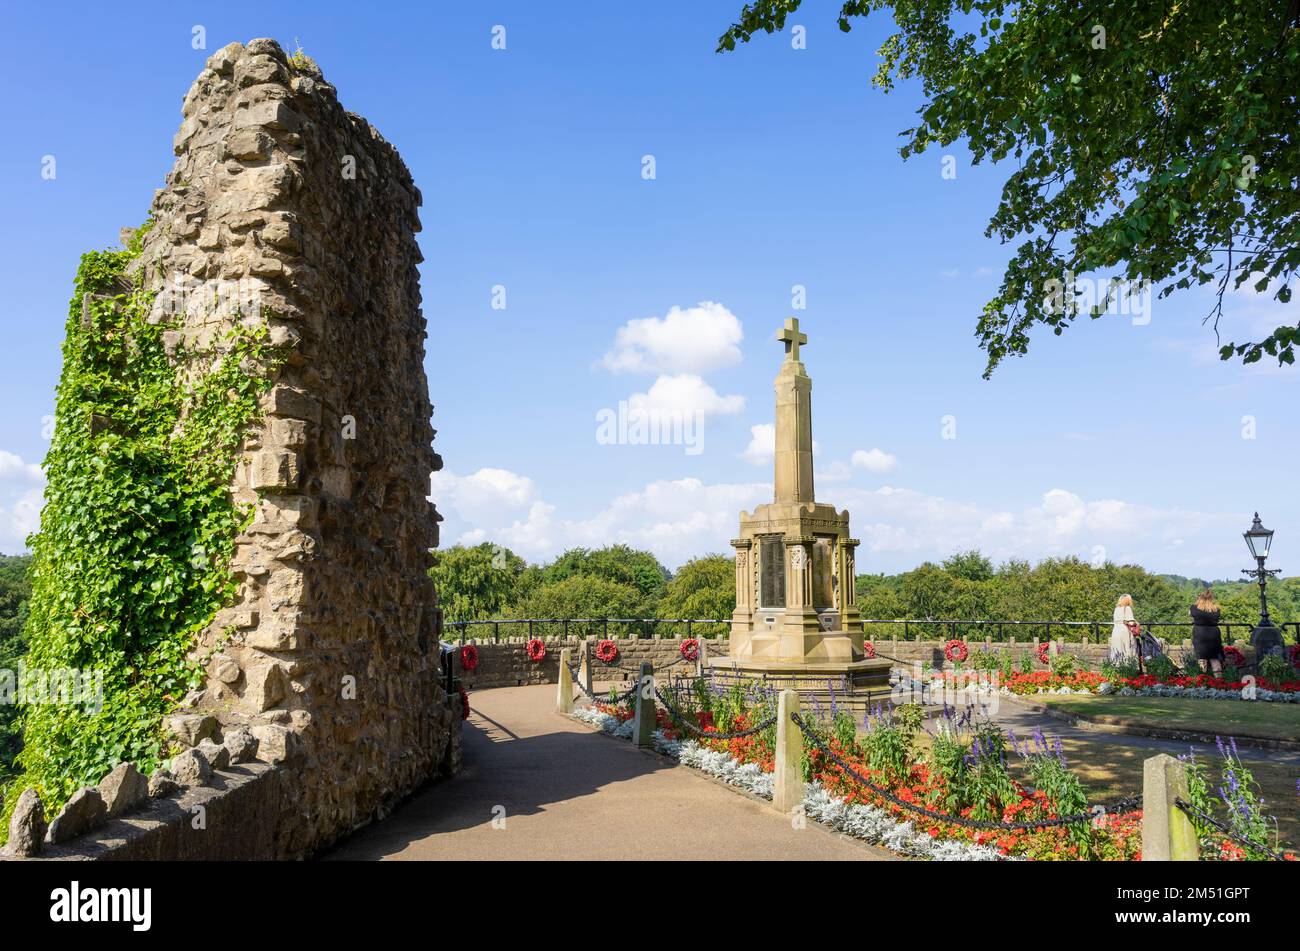 Rovine del castello di Knaresborough e monumento commemorativo alla guerra nei giardini del castello di Knaresborough North Yorkshire Inghilterra UK GB Europe Foto Stock